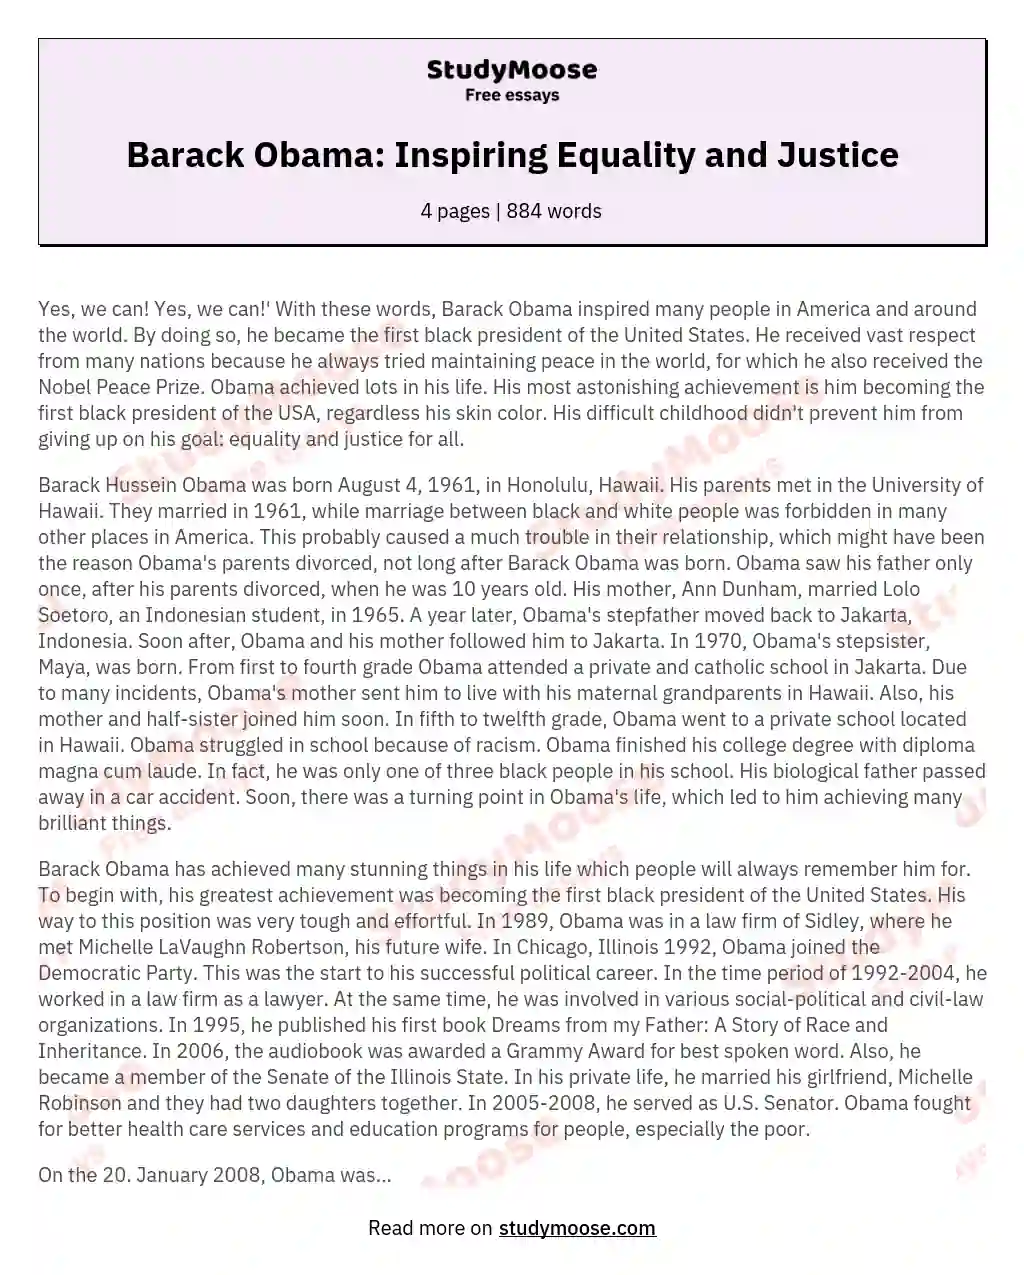 Barack Obama: Inspiring Equality and Justice essay